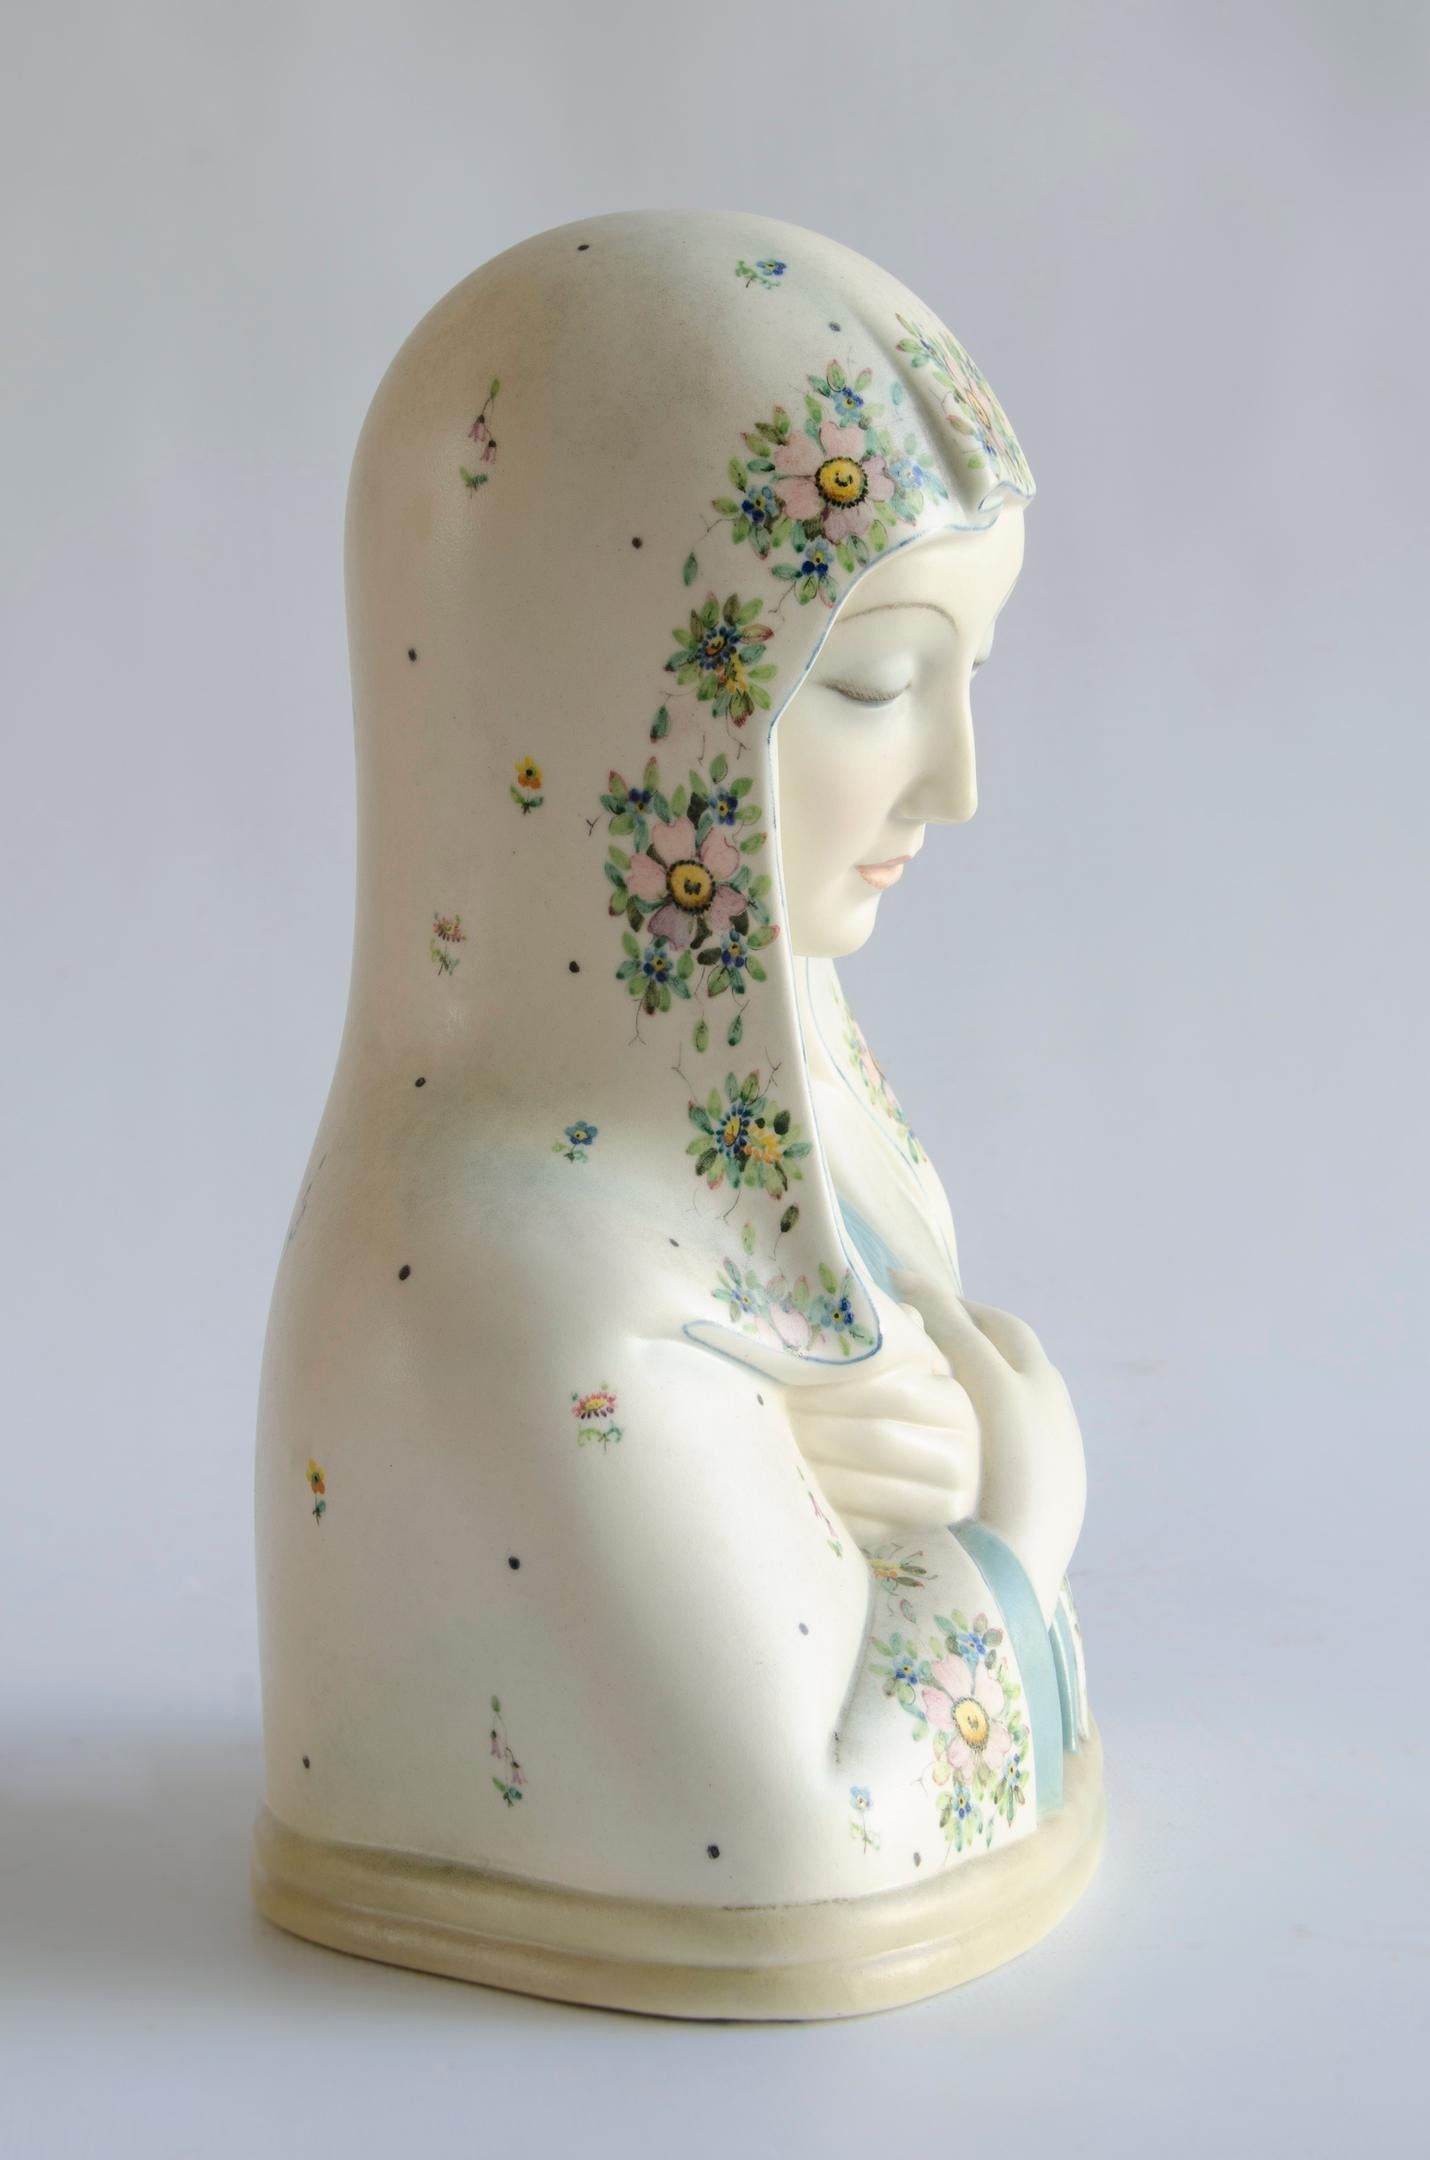 Virgin Mary, Lencci (Madonna)
Origin Torino, Italy
design Helen Scavini
circa 1940.